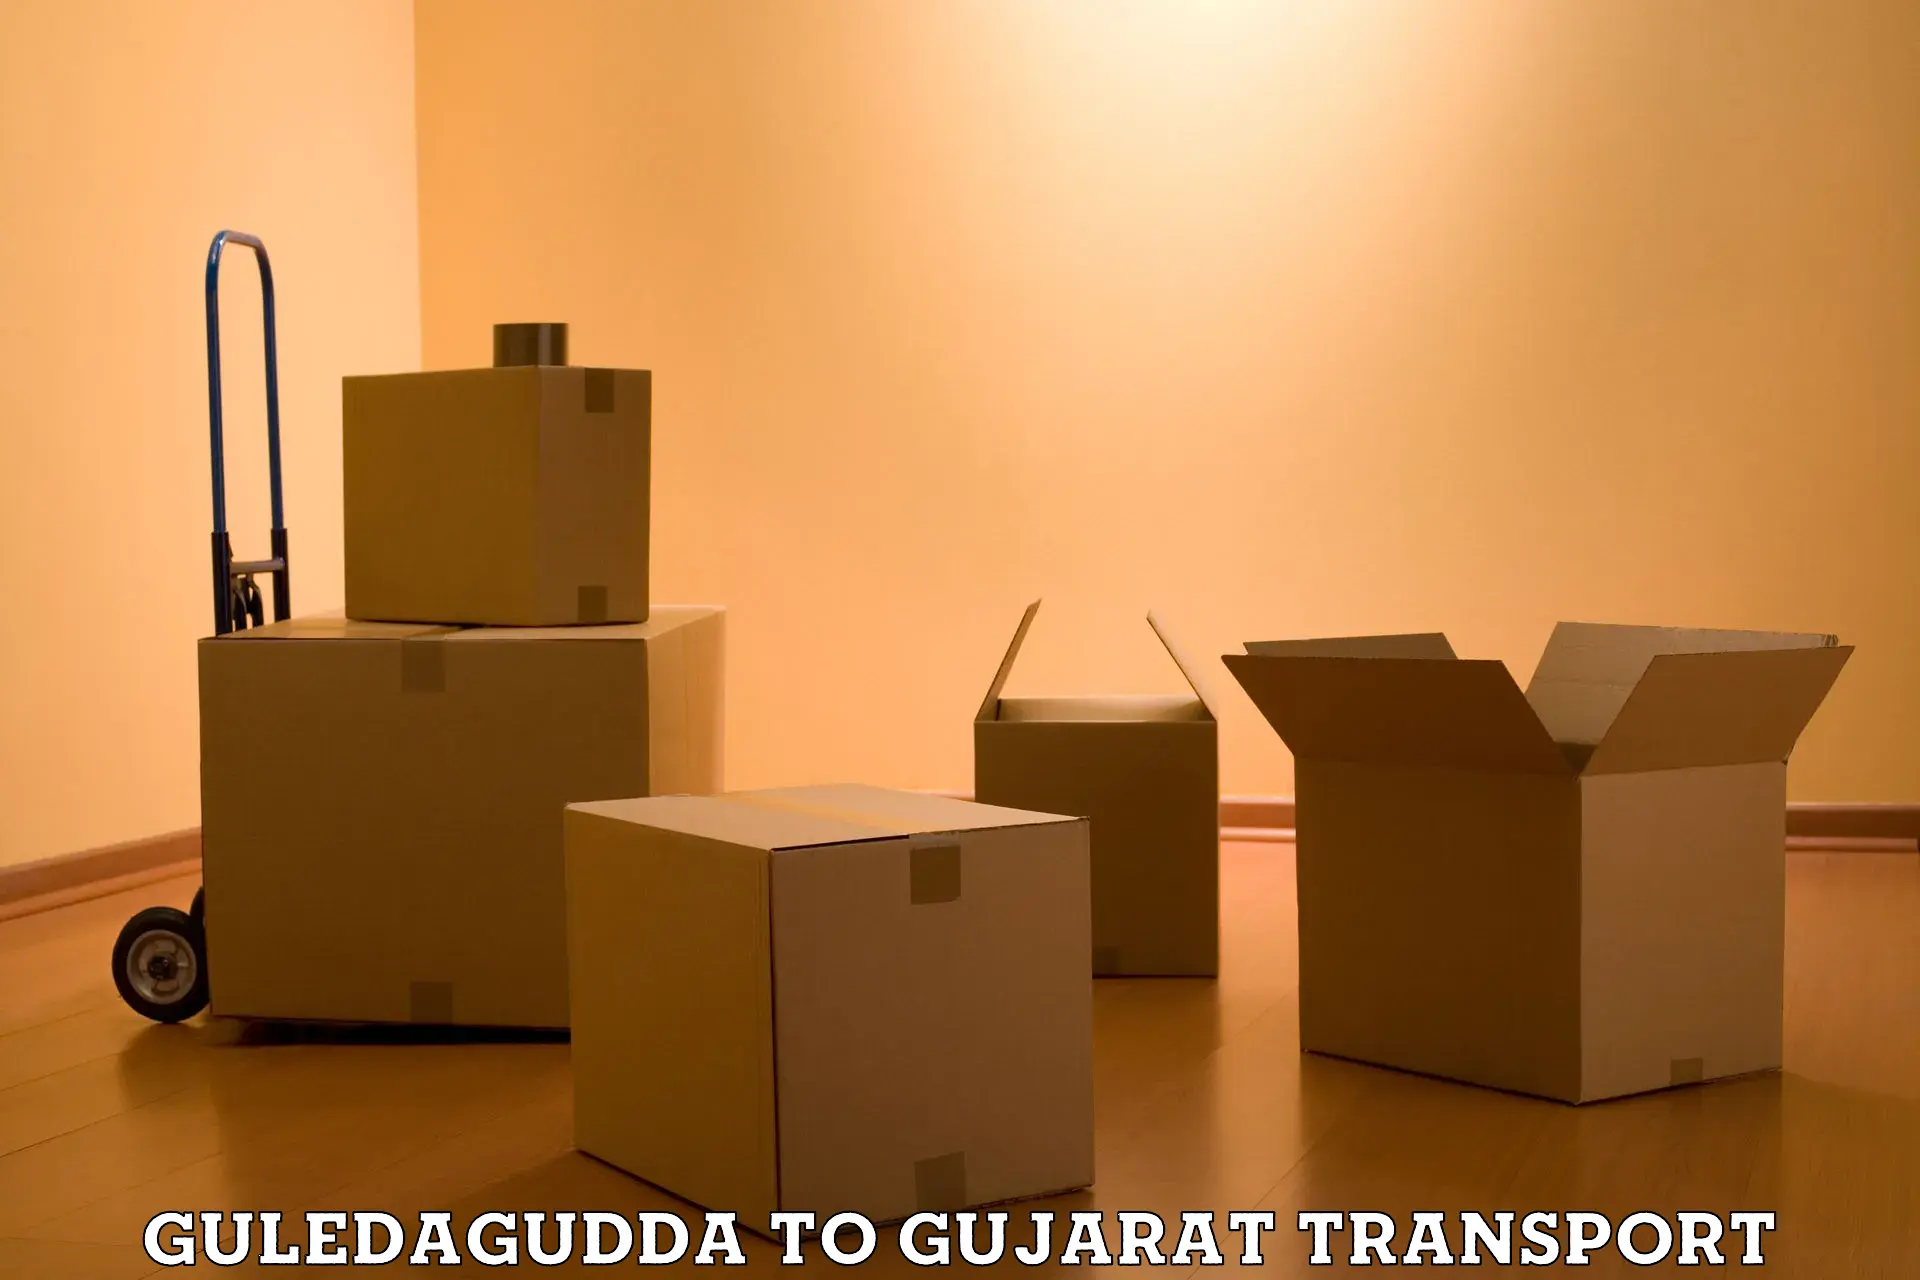 Sending bike to another city Guledagudda to Radhanpur